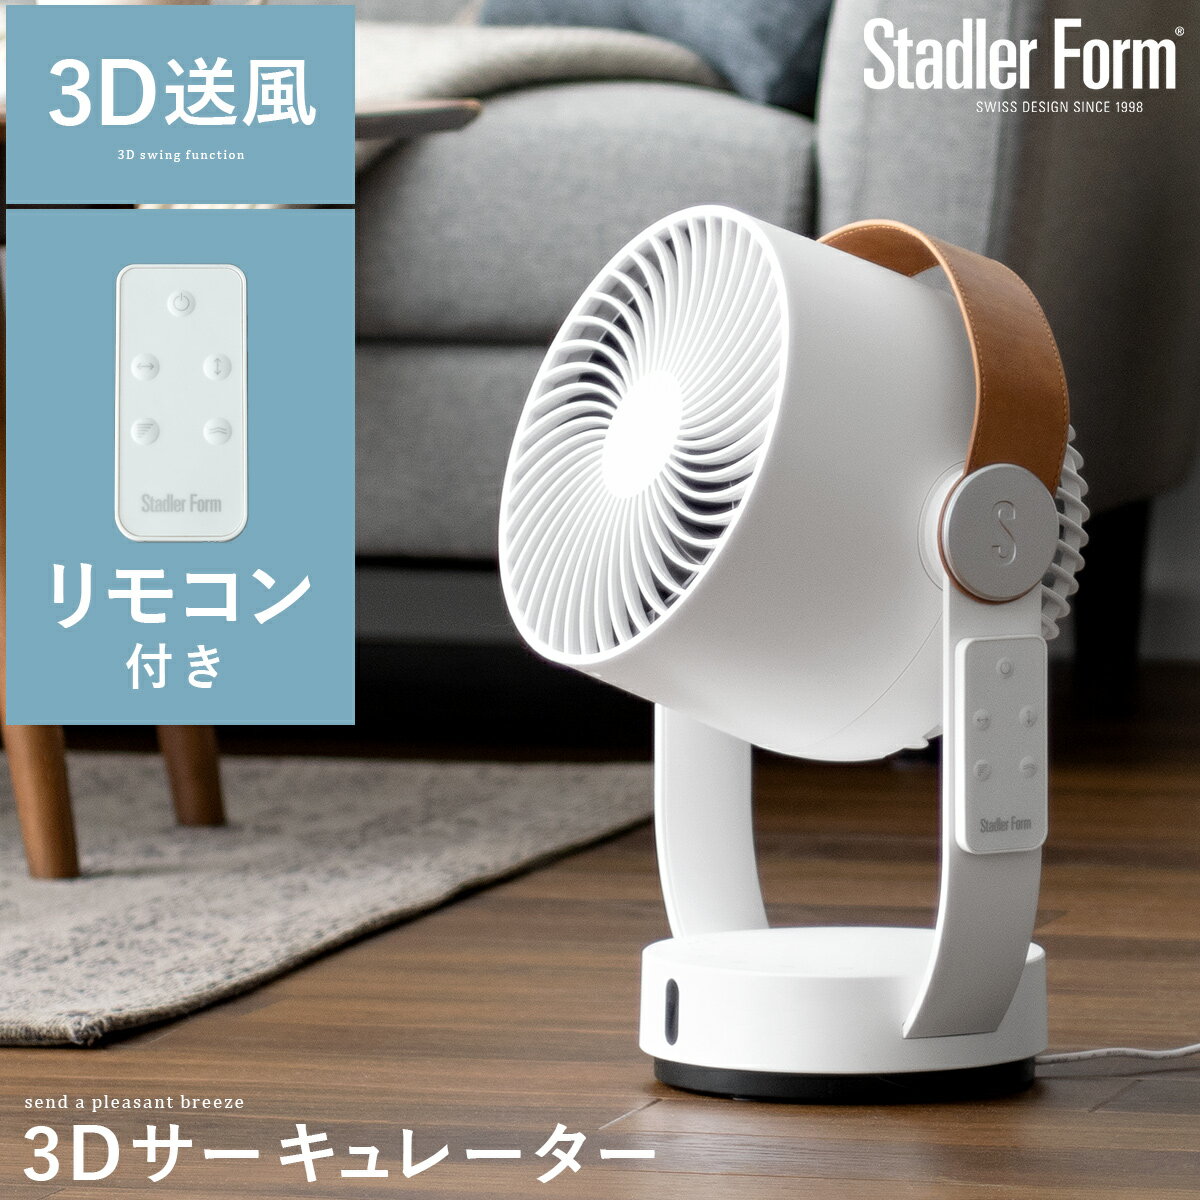 スタドラーフォーム レオ 3Dファン Stadler Form Leo 3D Fan 扇風機 サーキュレーター ファン 首振り 自動首振り コンパクト 小型 DCモーター 持ち手付き レザー 夏 涼しい 静か パワフル リモコン ホワイト